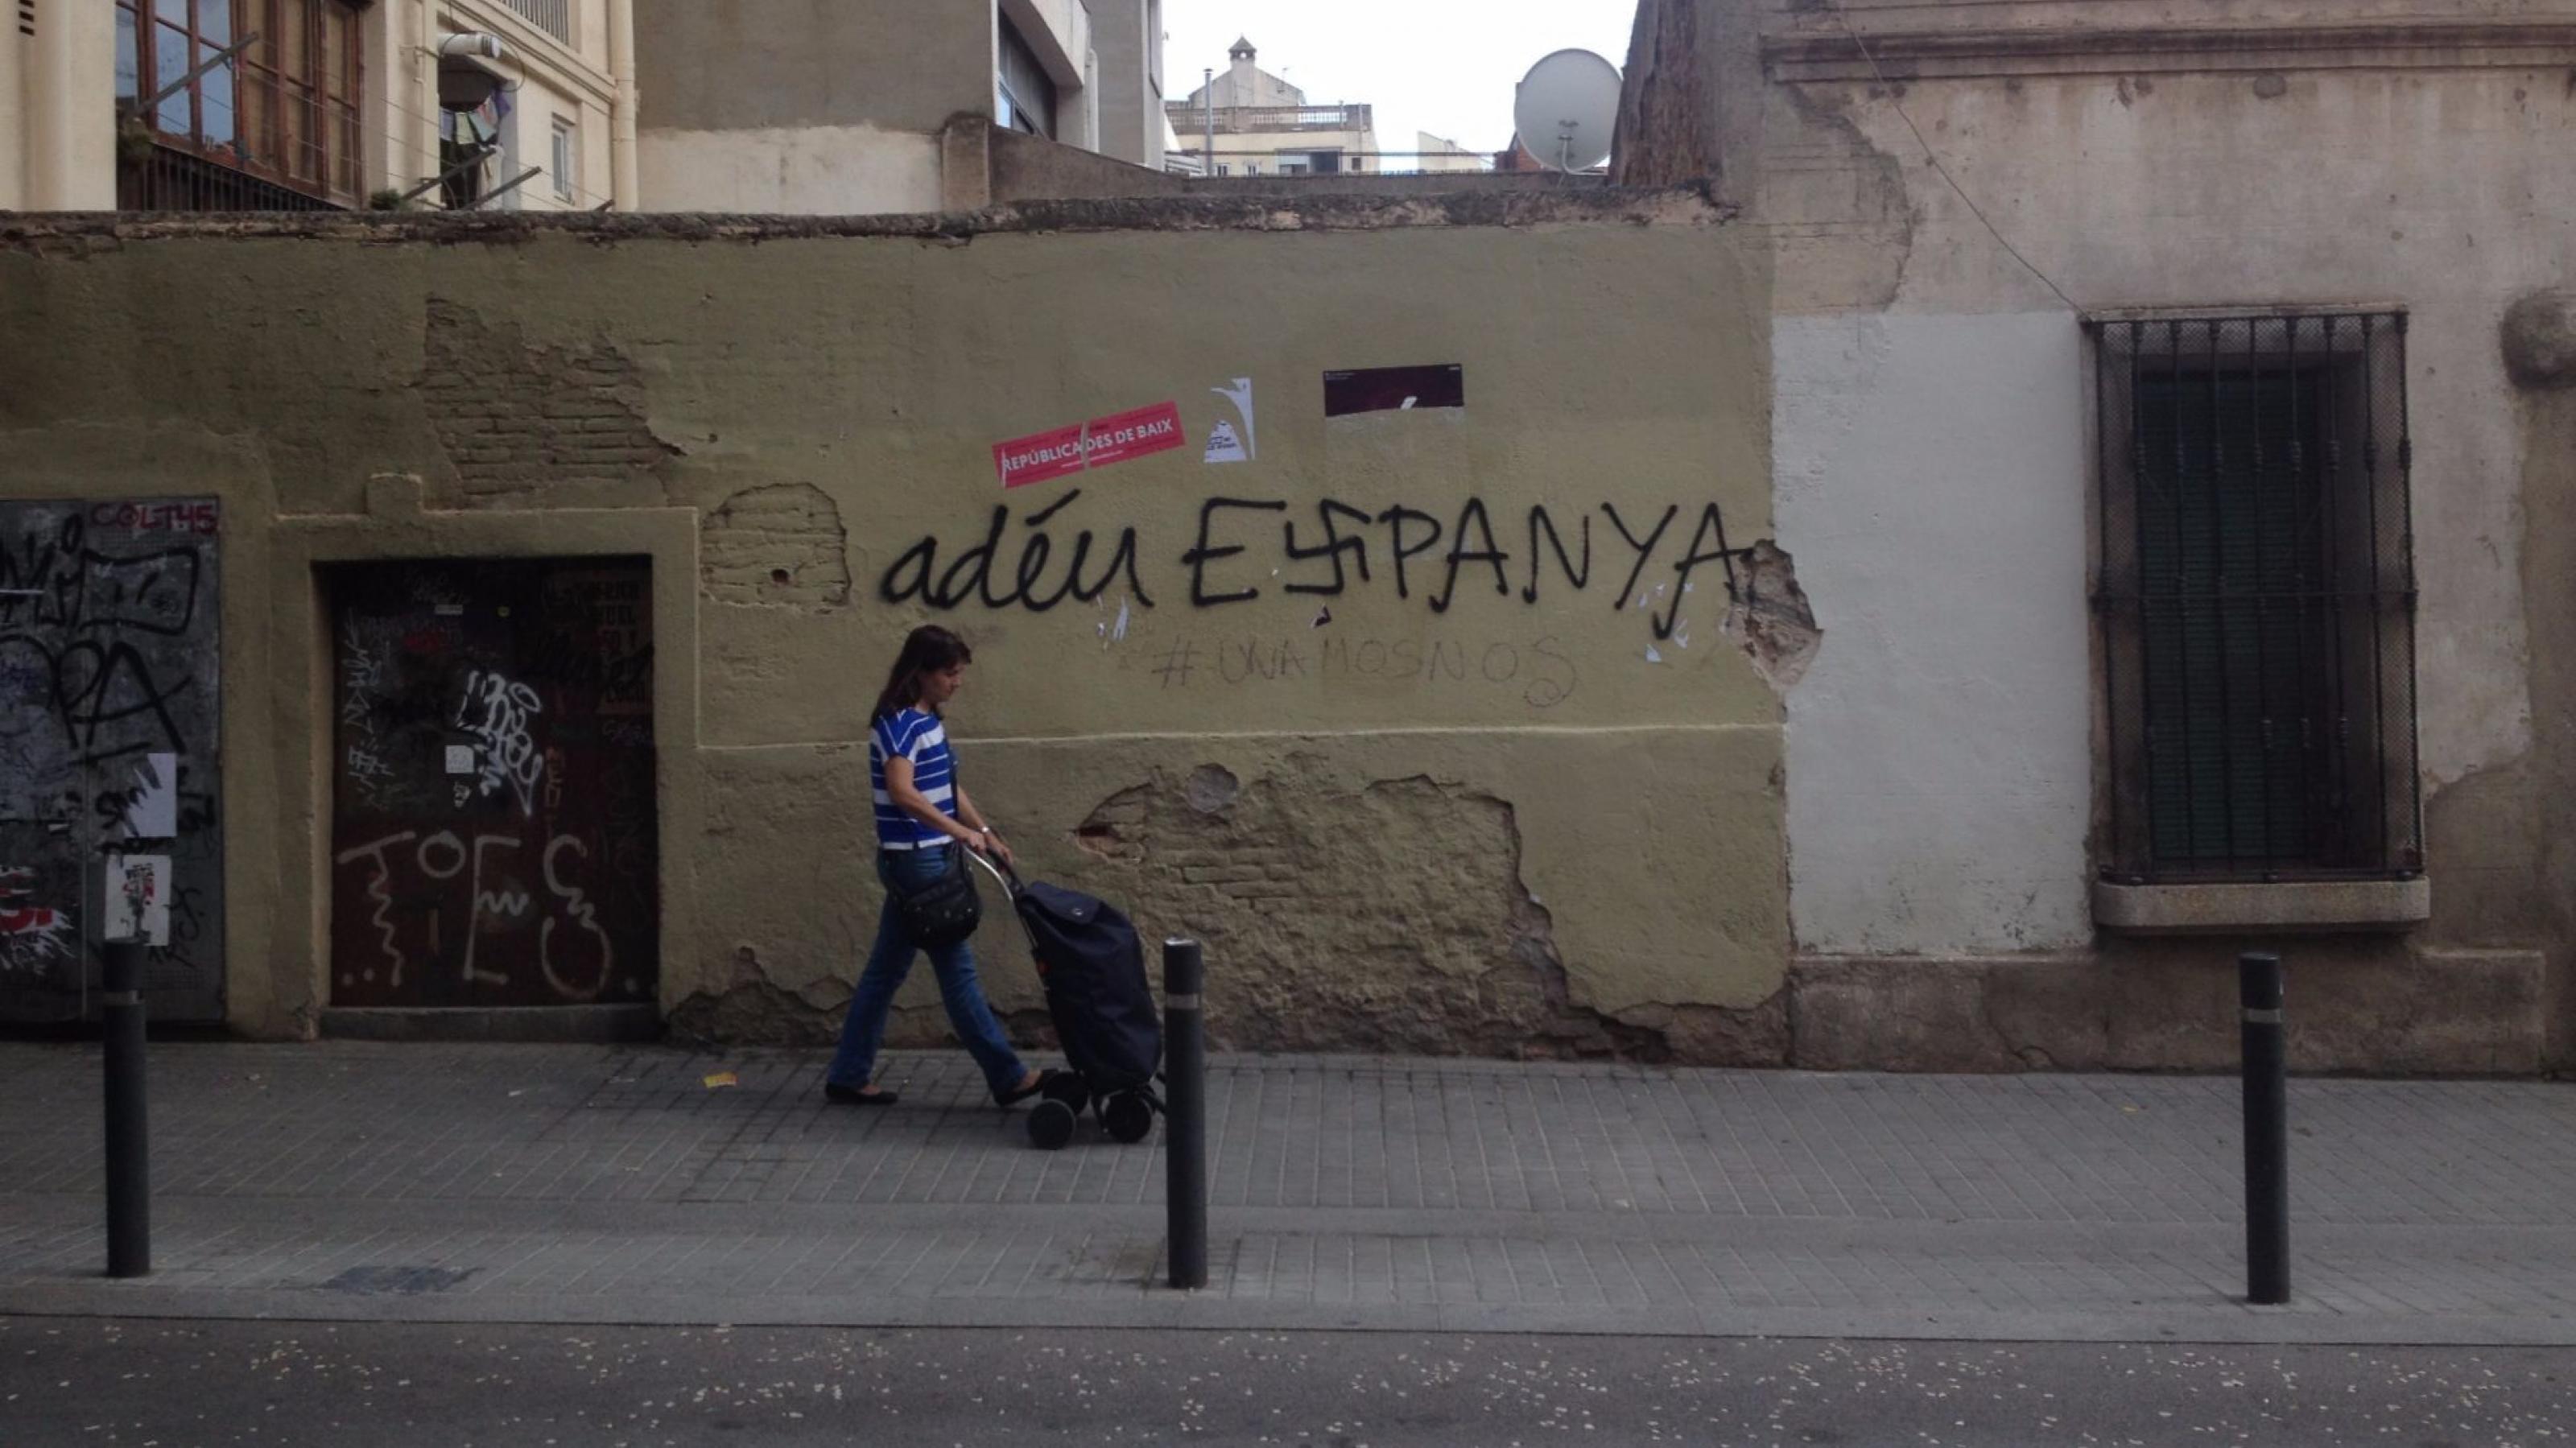 Eine Straße im Stadtviertel Grácia in Barcelona mit Graffiti „Adeu Espanya“, das s in Espanya als Hakenkreuz